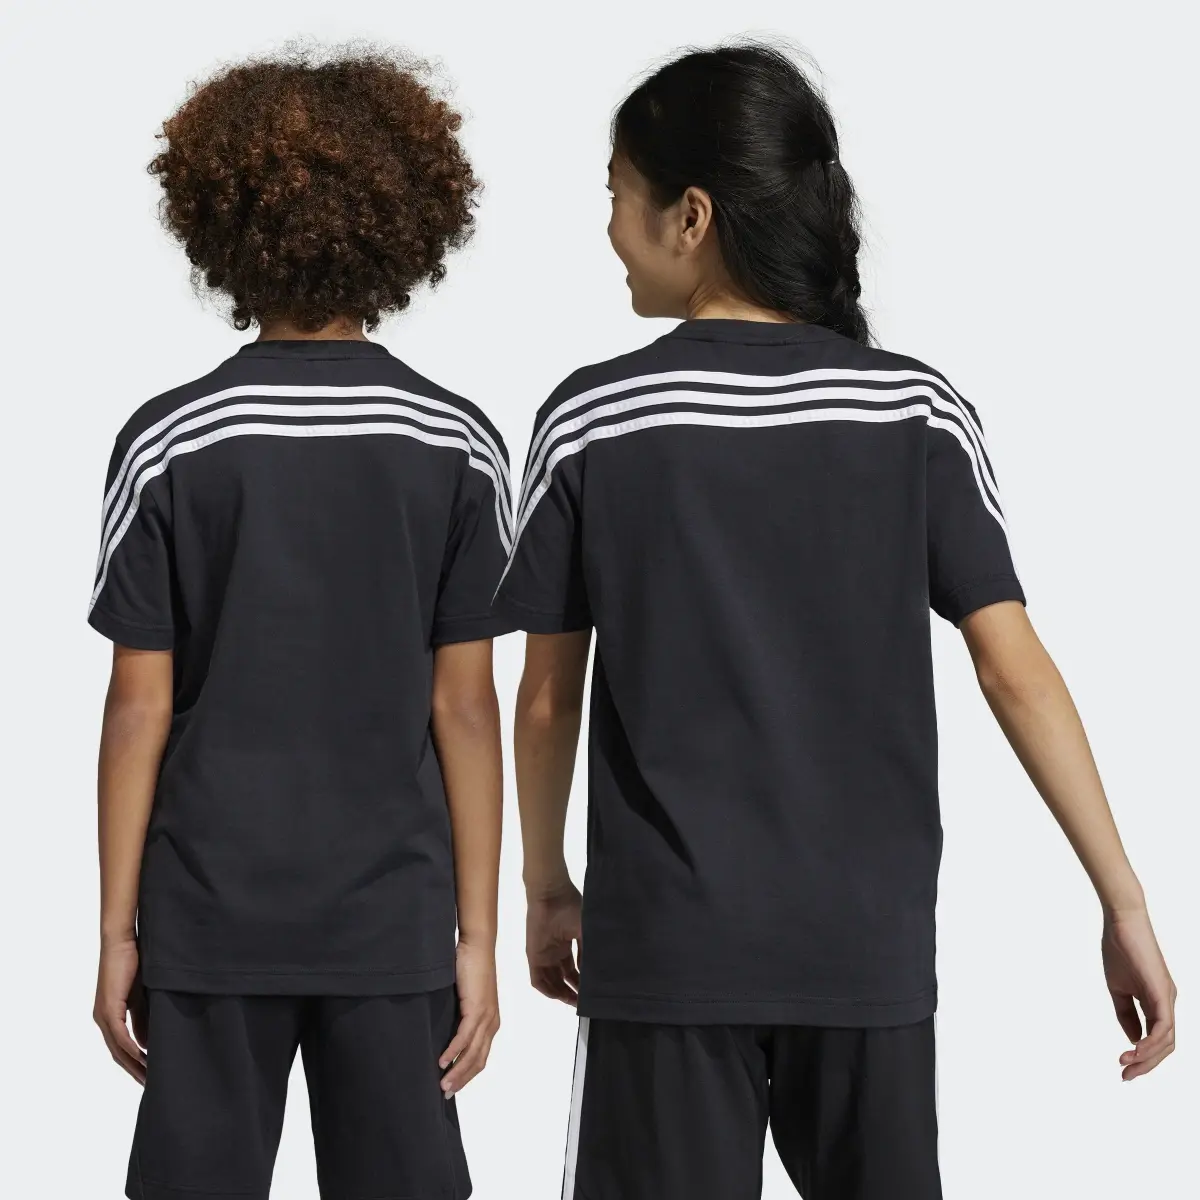 Adidas T-shirt Future Icons 3-Stripes. 2